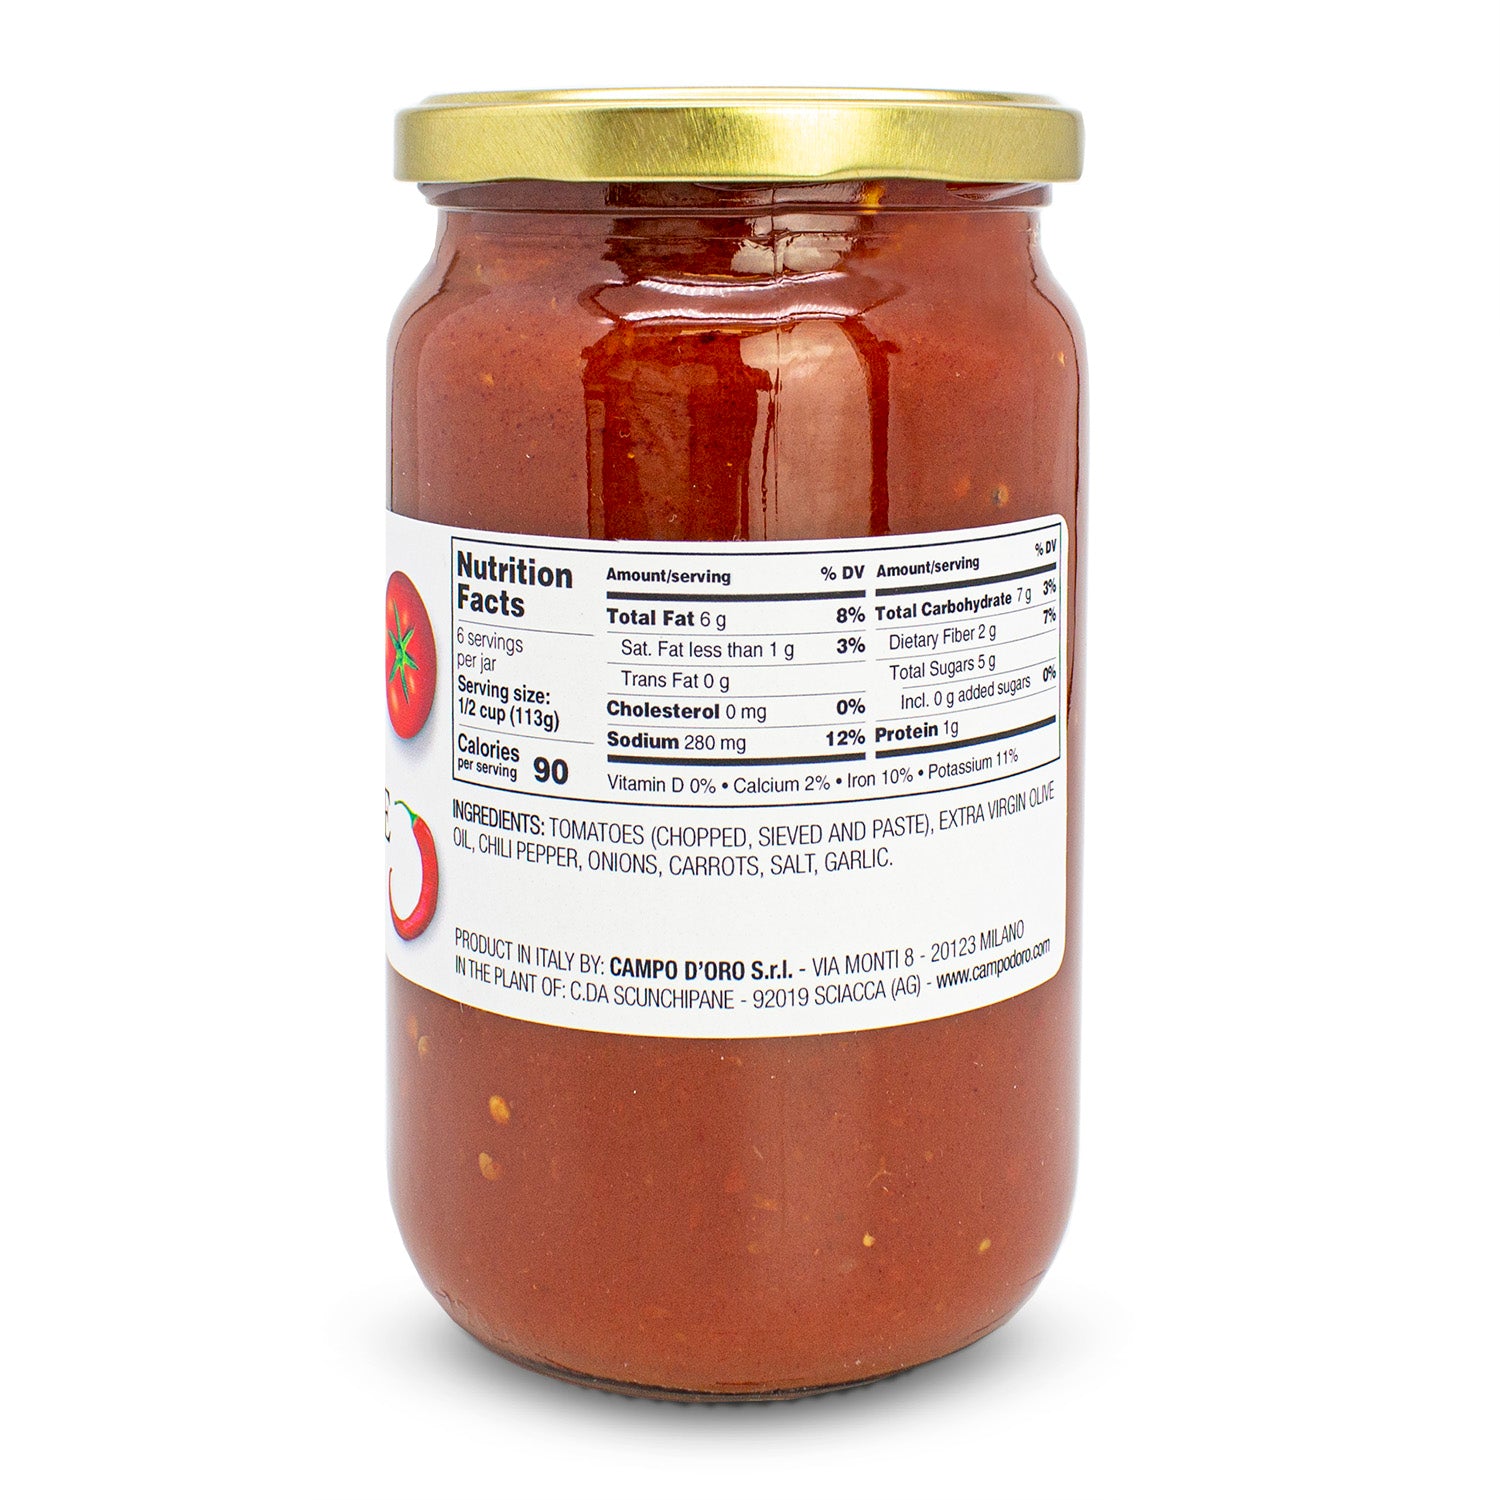 Campo D'Oro Arrabiatta Tomato Sauce